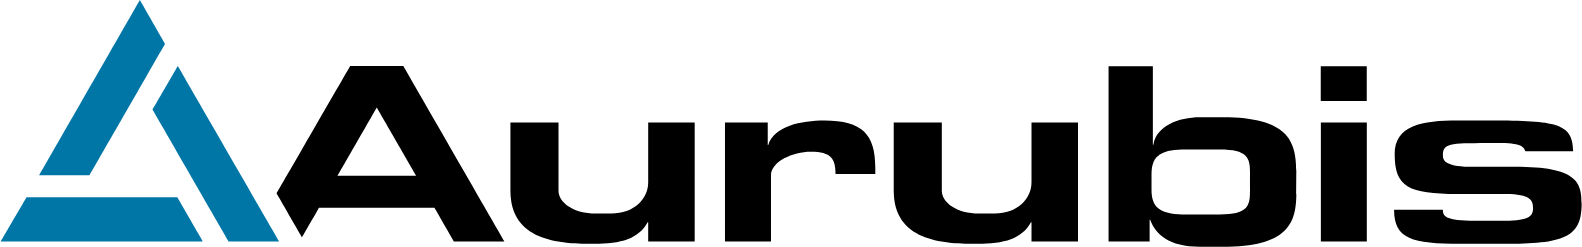 Aurubis logo large (transparent PNG)